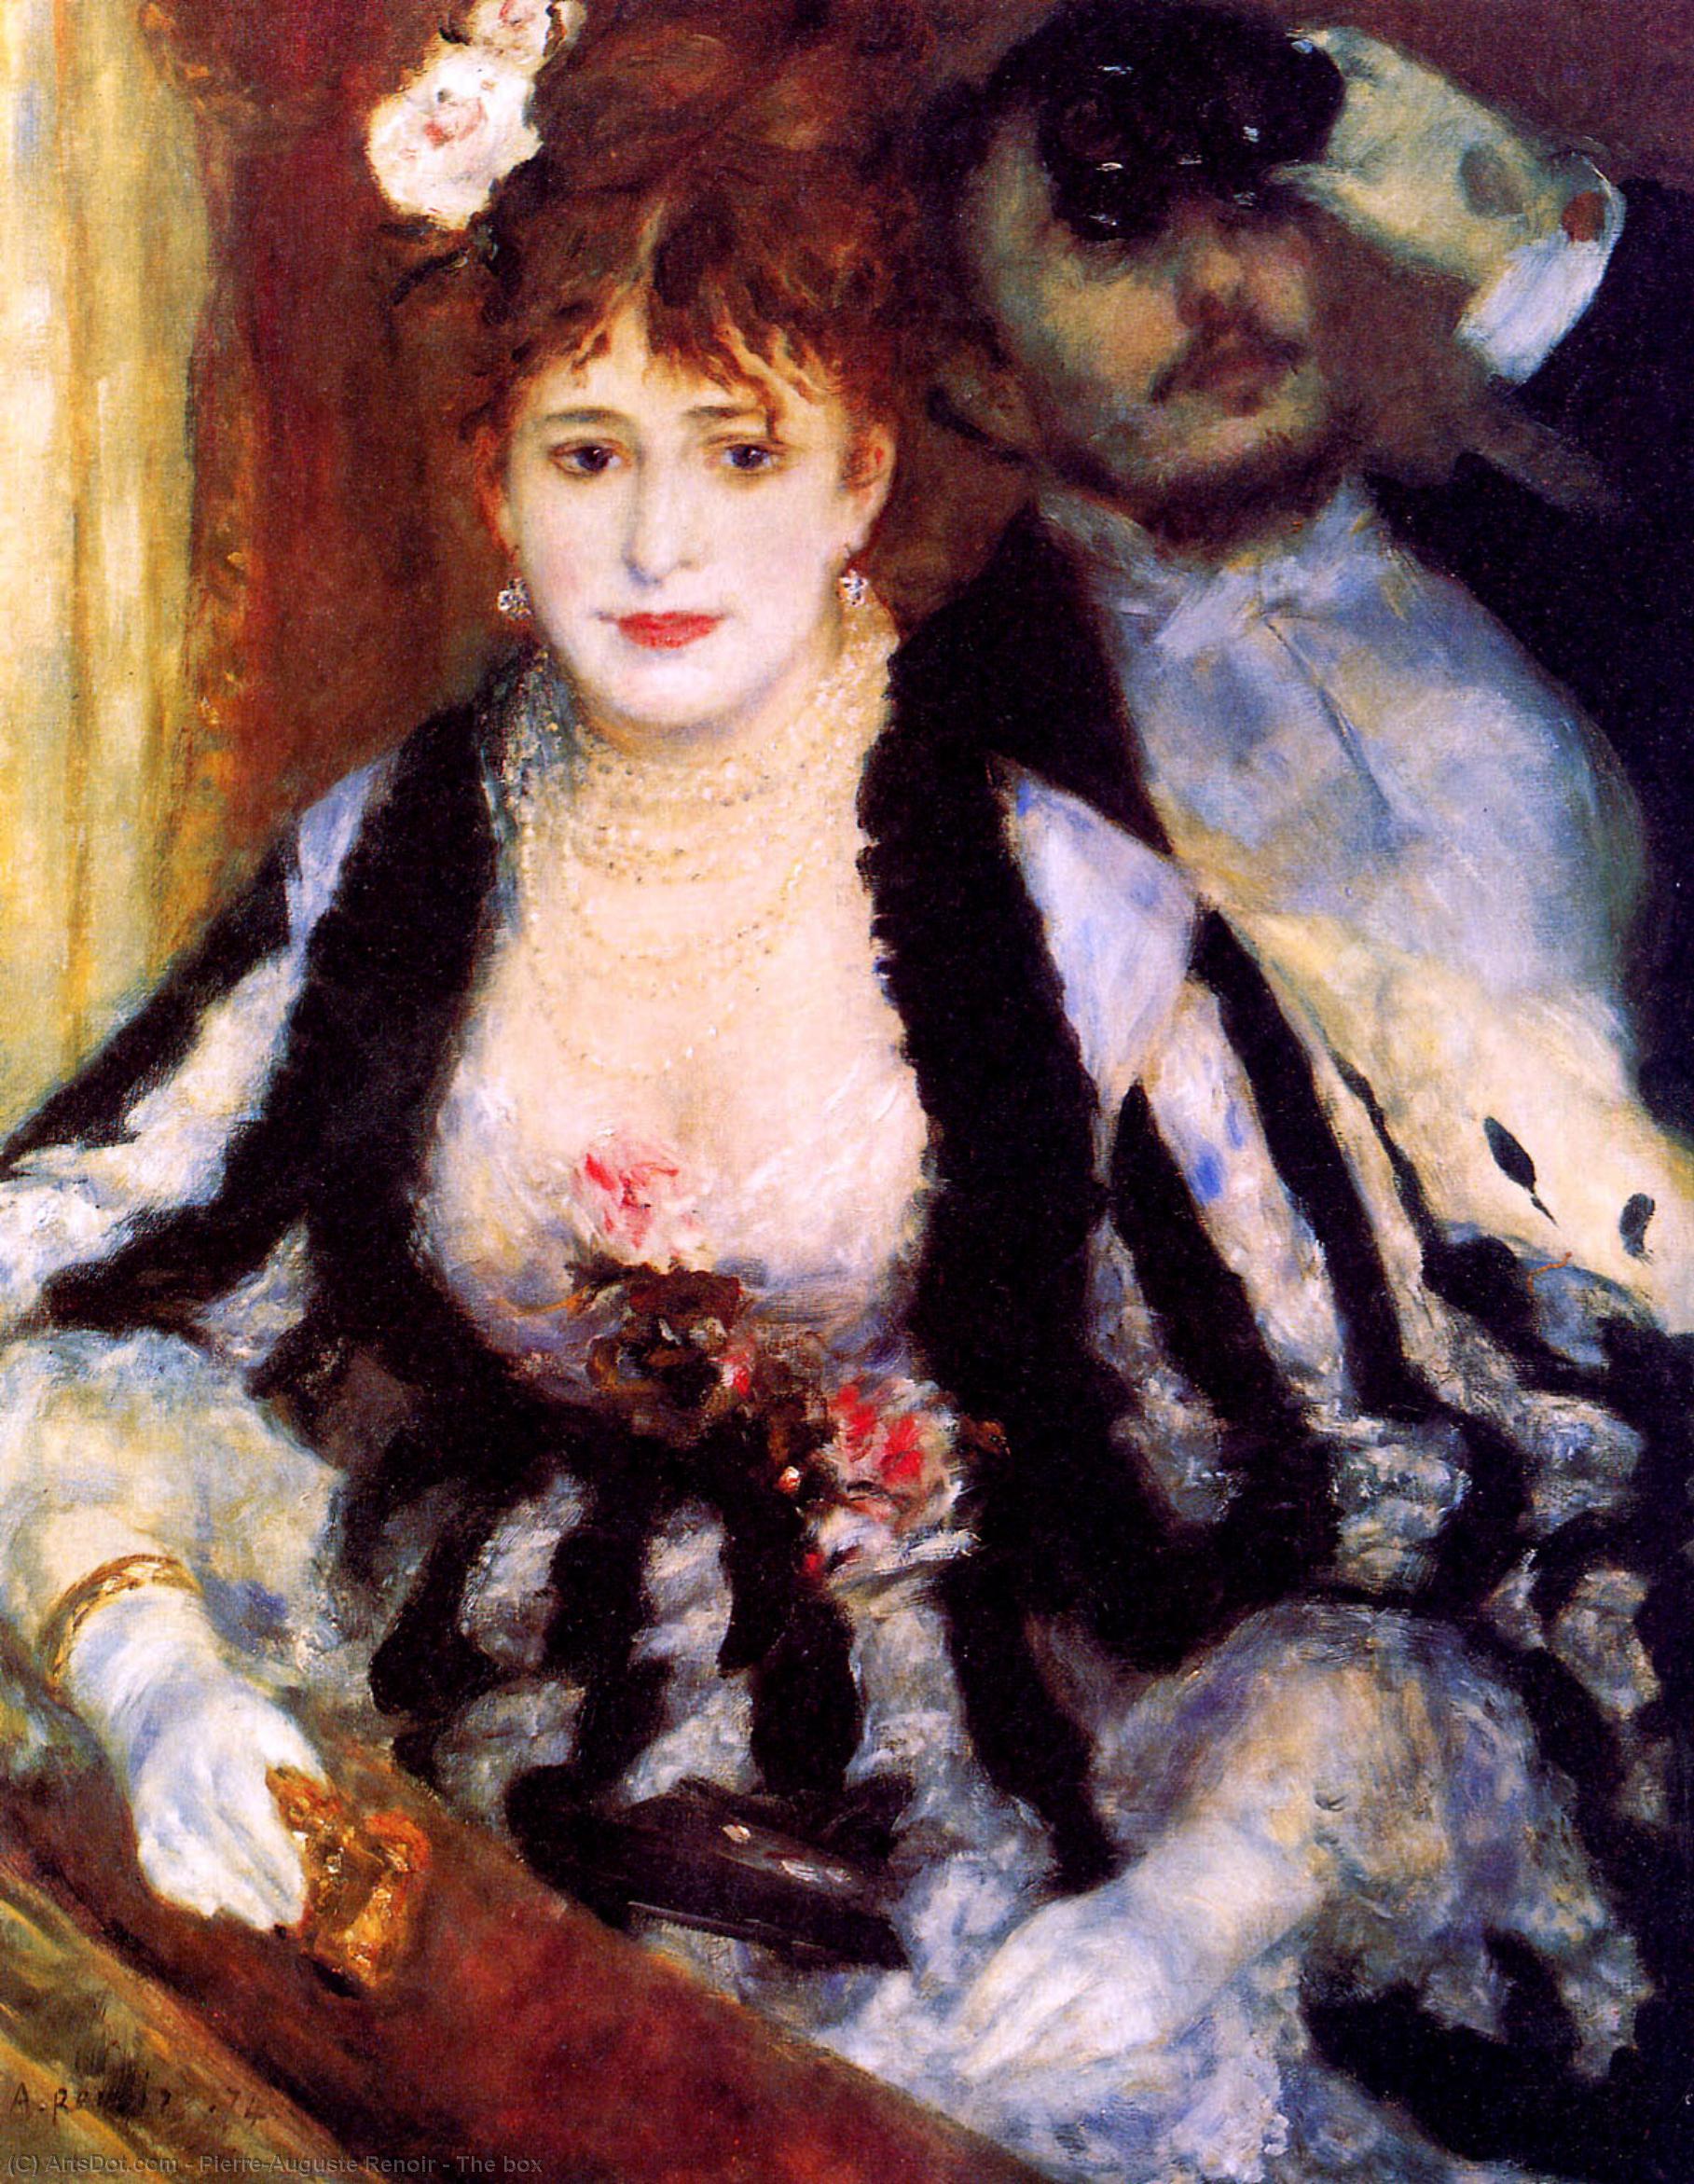 WikiOO.org - אנציקלופדיה לאמנויות יפות - ציור, יצירות אמנות Pierre-Auguste Renoir - The box